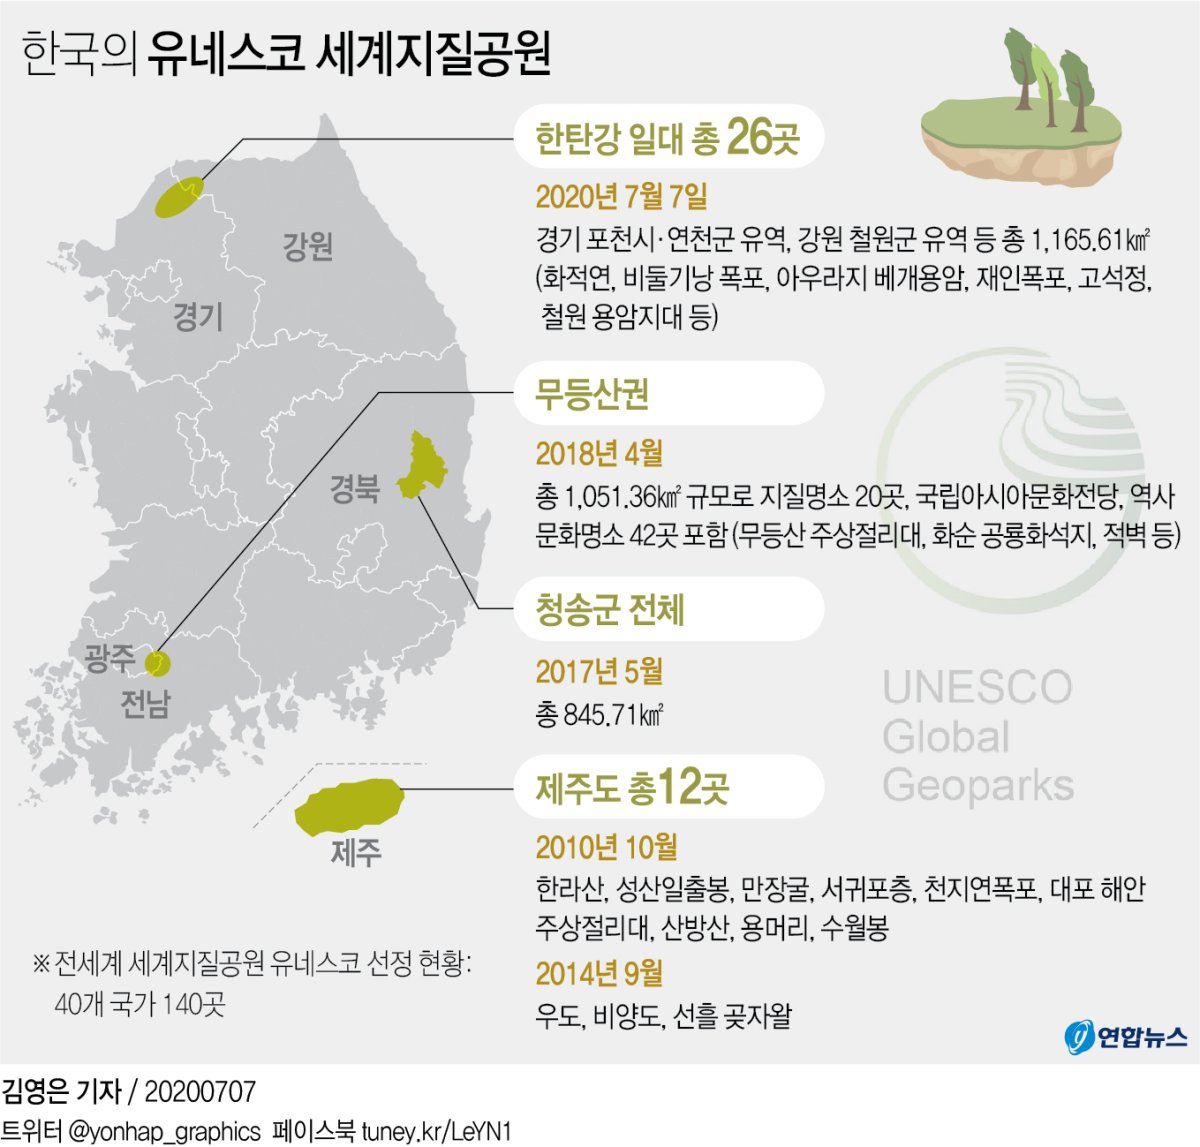 [그래픽] 한국의 유네스코 세계지질공원